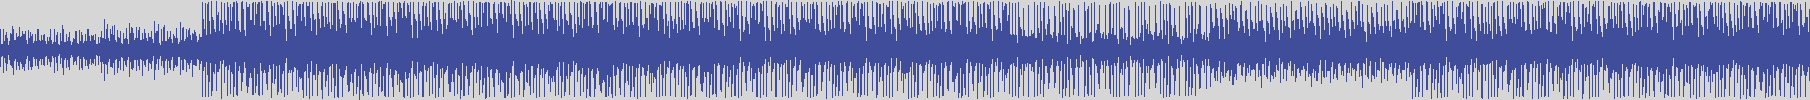 noclouds_chillout [NOC100] Mont Hanary - Dog [Original Mix] audio wave form